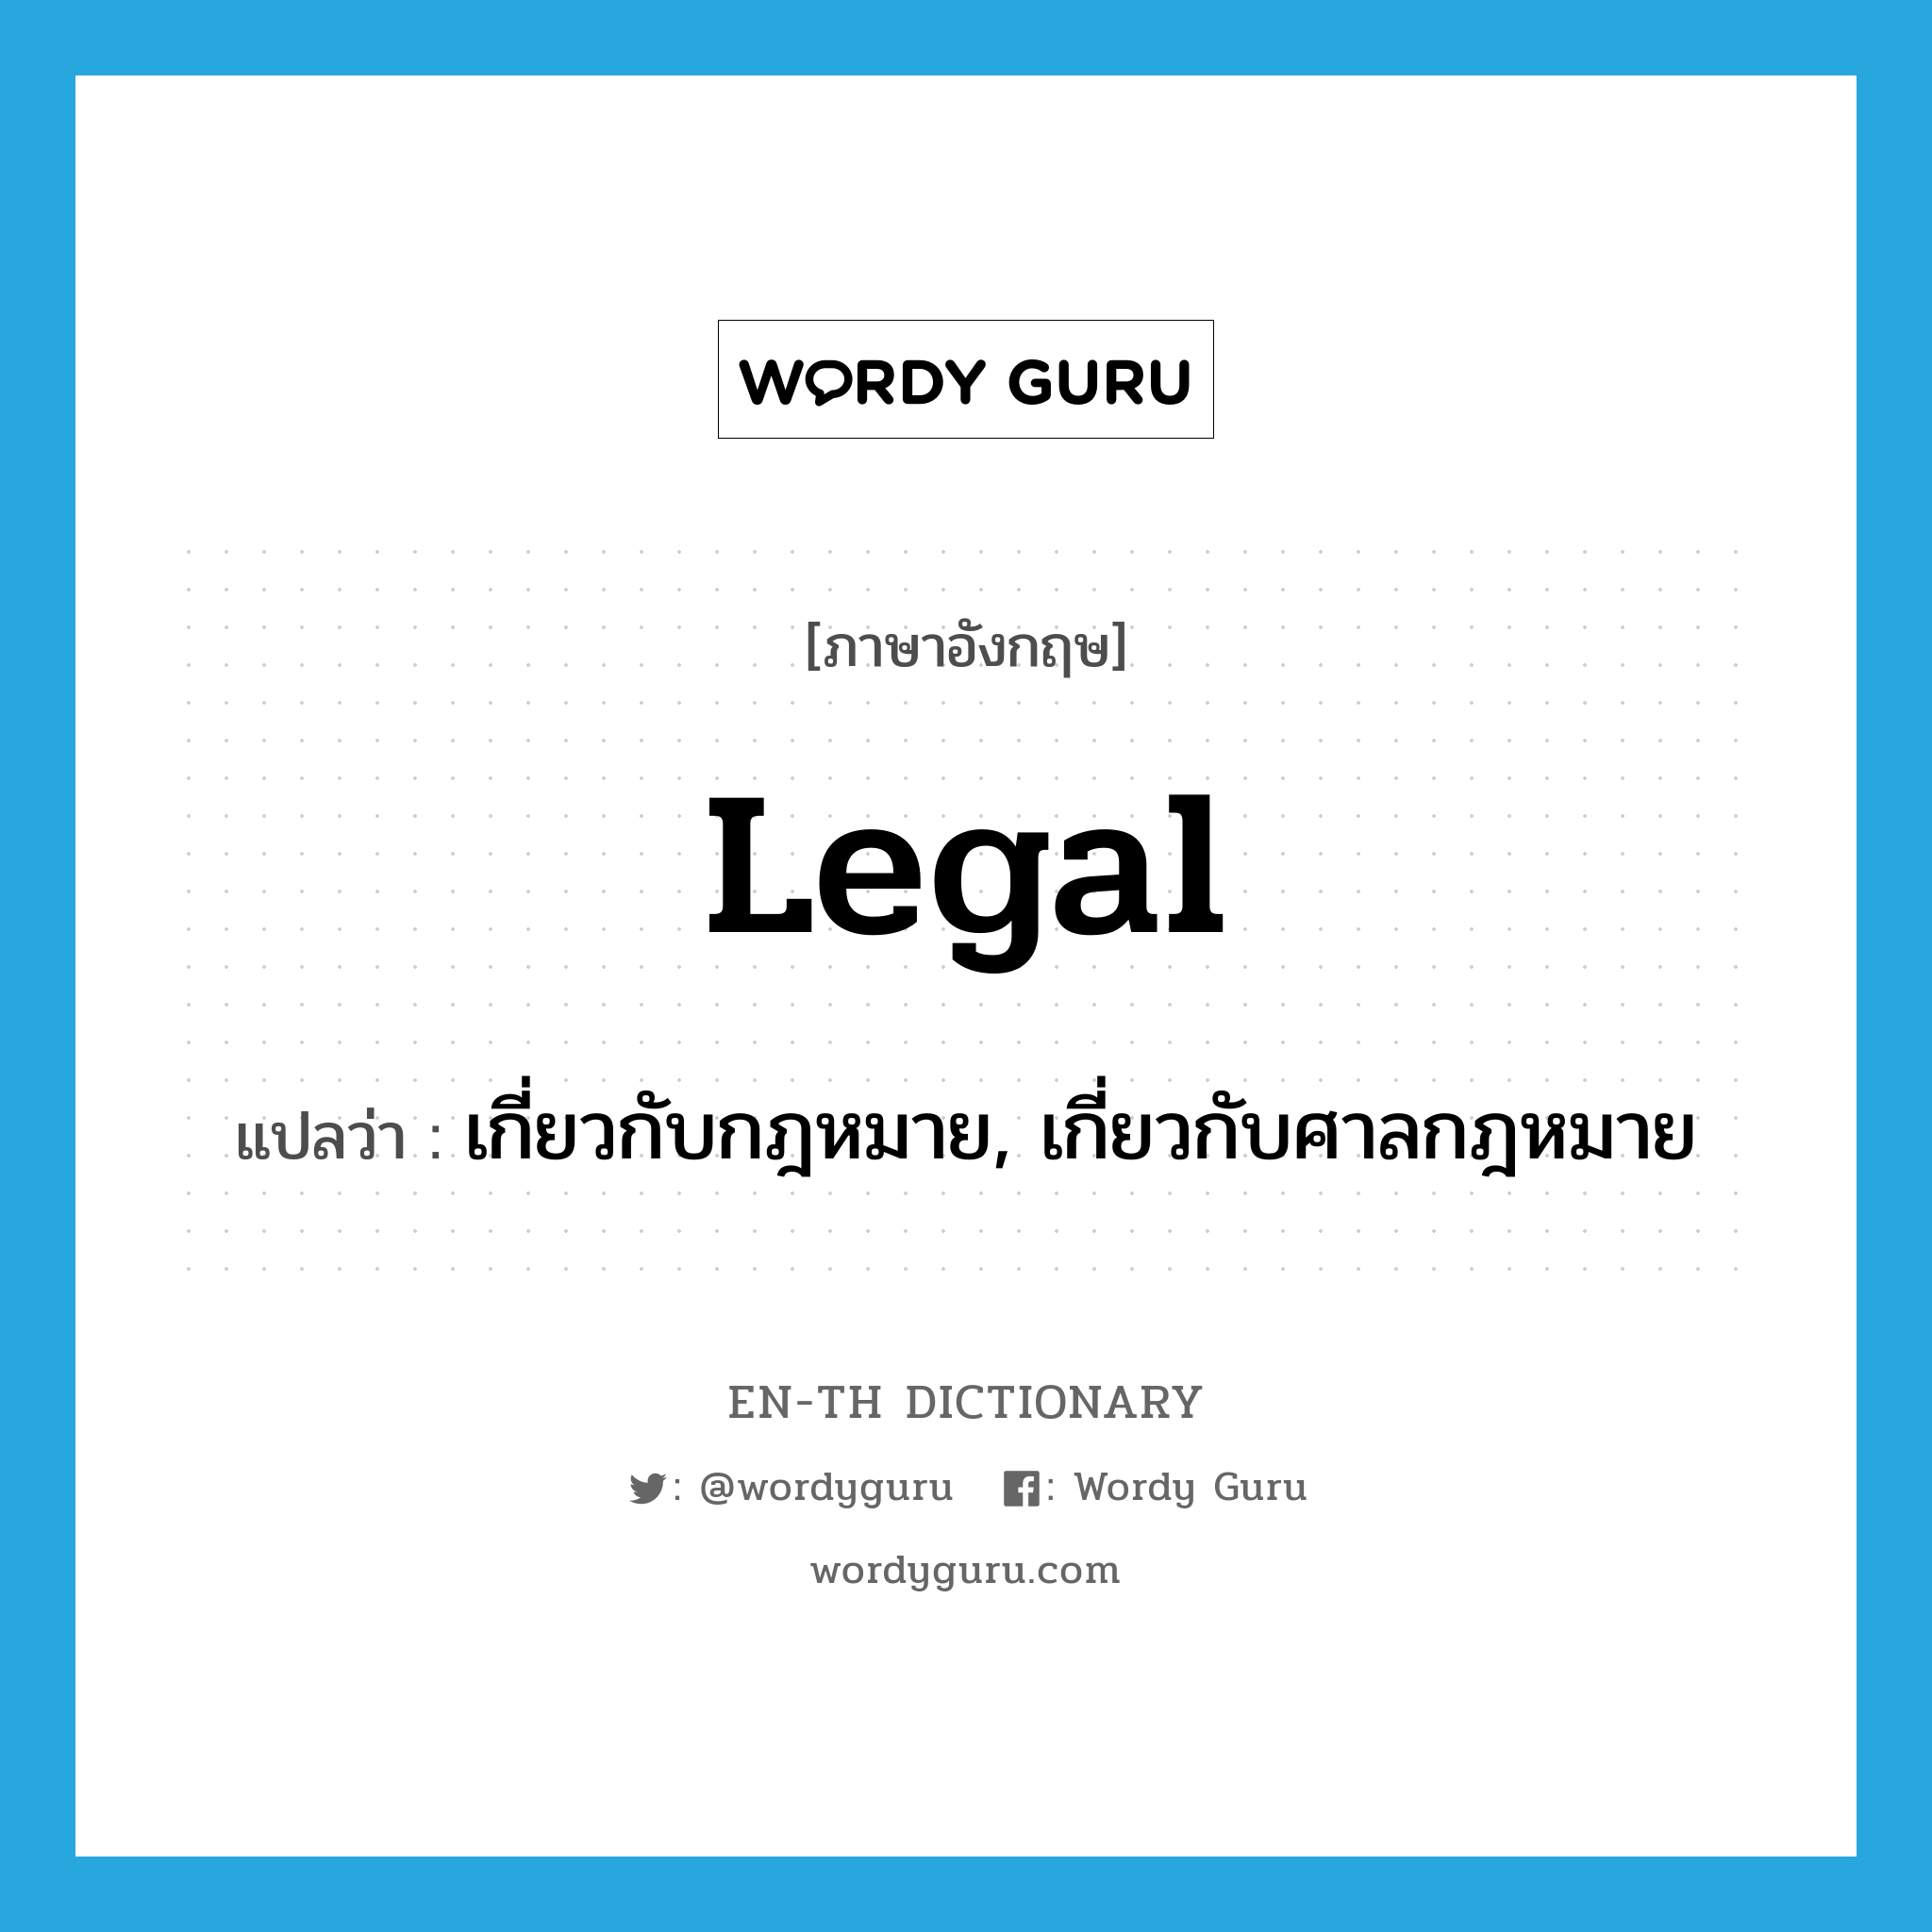 เกี่ยวกับกฎหมาย, เกี่ยวกับศาลกฎหมาย ภาษาอังกฤษ?, คำศัพท์ภาษาอังกฤษ เกี่ยวกับกฎหมาย, เกี่ยวกับศาลกฎหมาย แปลว่า legal ประเภท ADJ หมวด ADJ